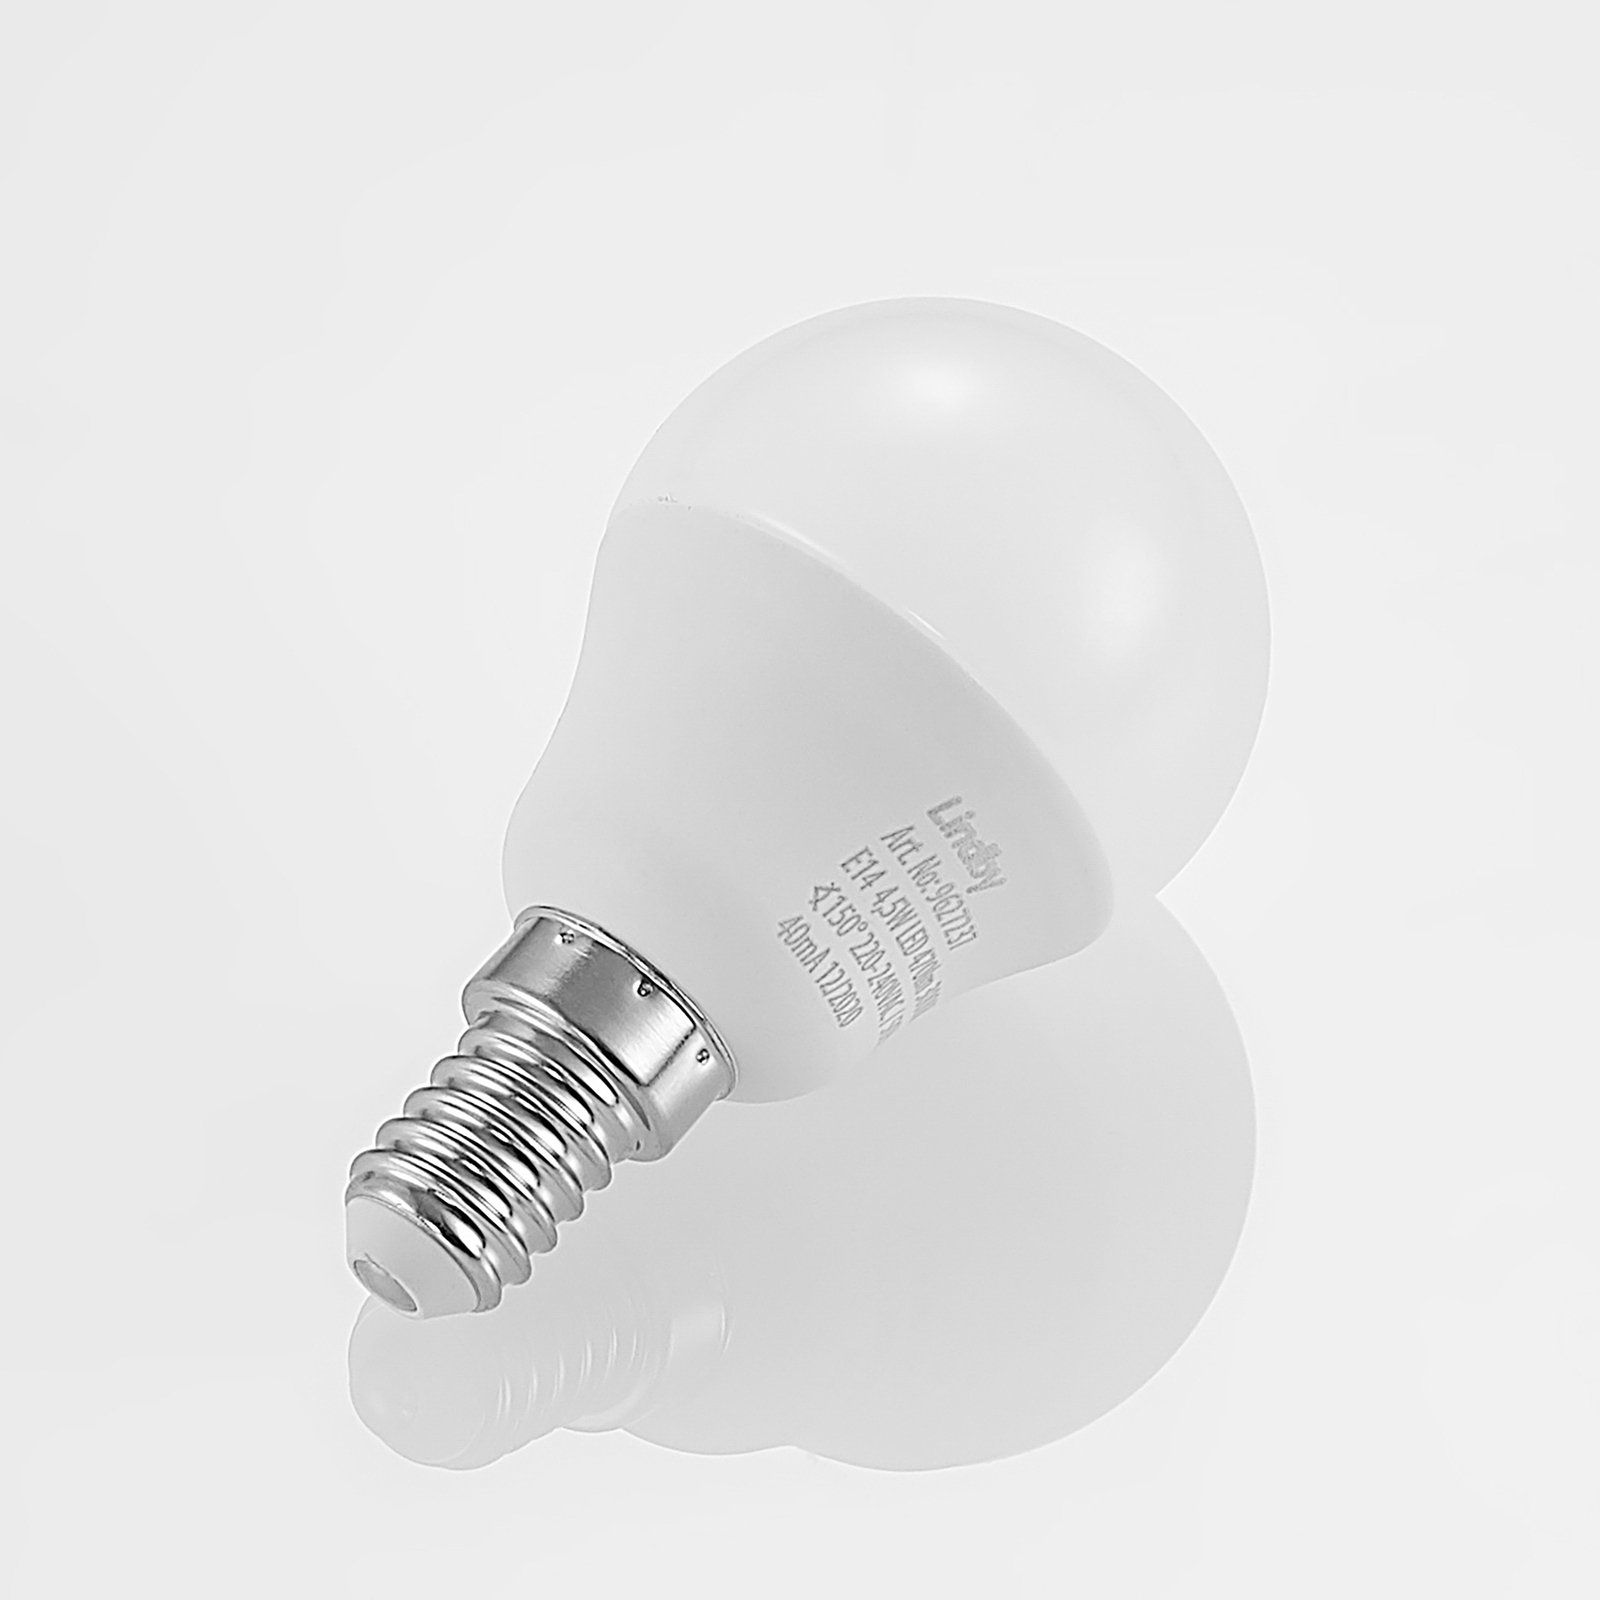 Lindby LED žiarovka E14 G45 4,5W 3000K opál sada 10 ks